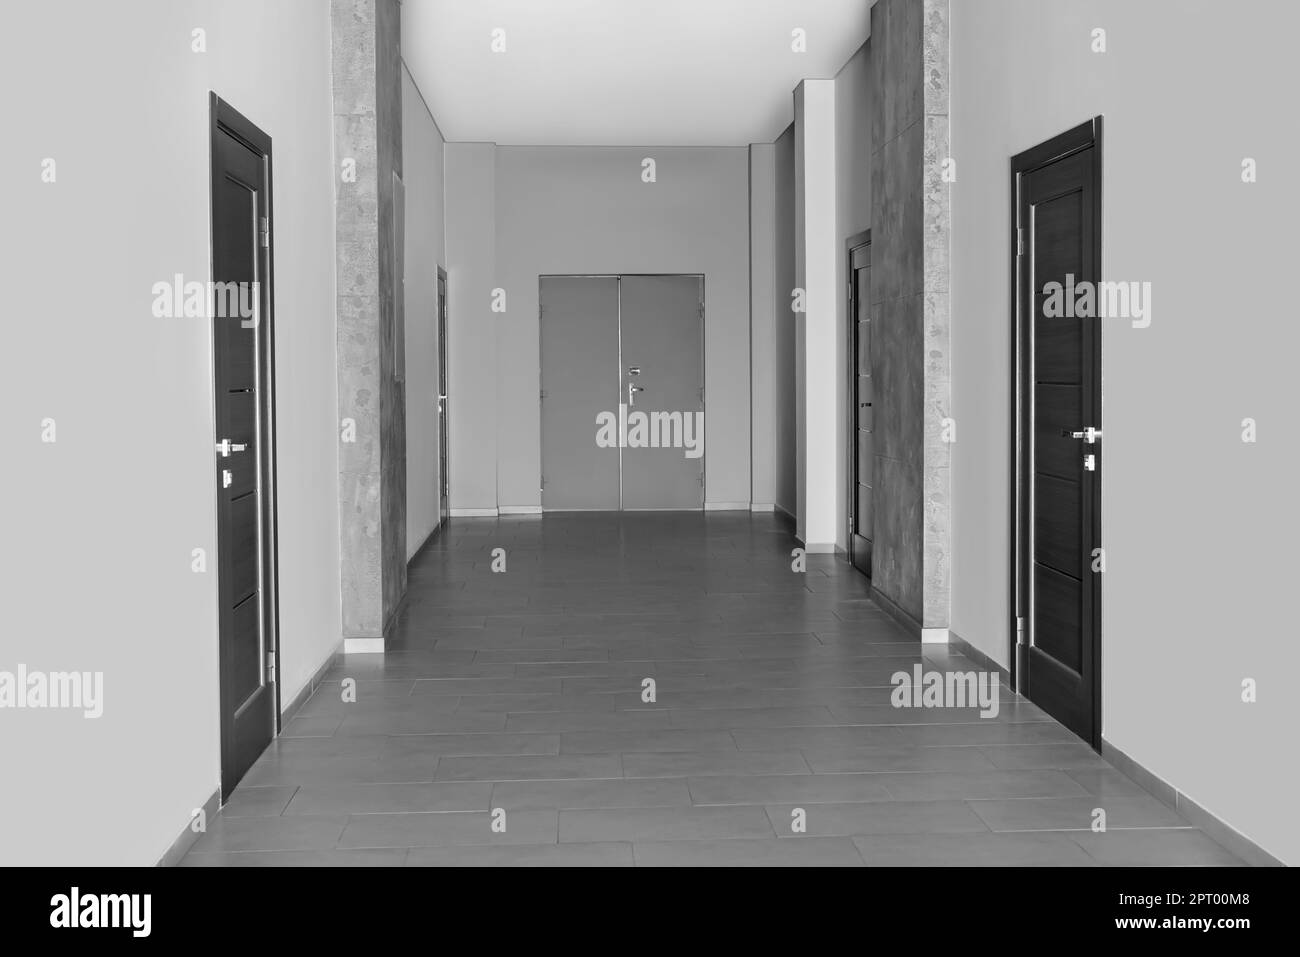 Empty office corridor with wooden doors. Interior design Stock Photo